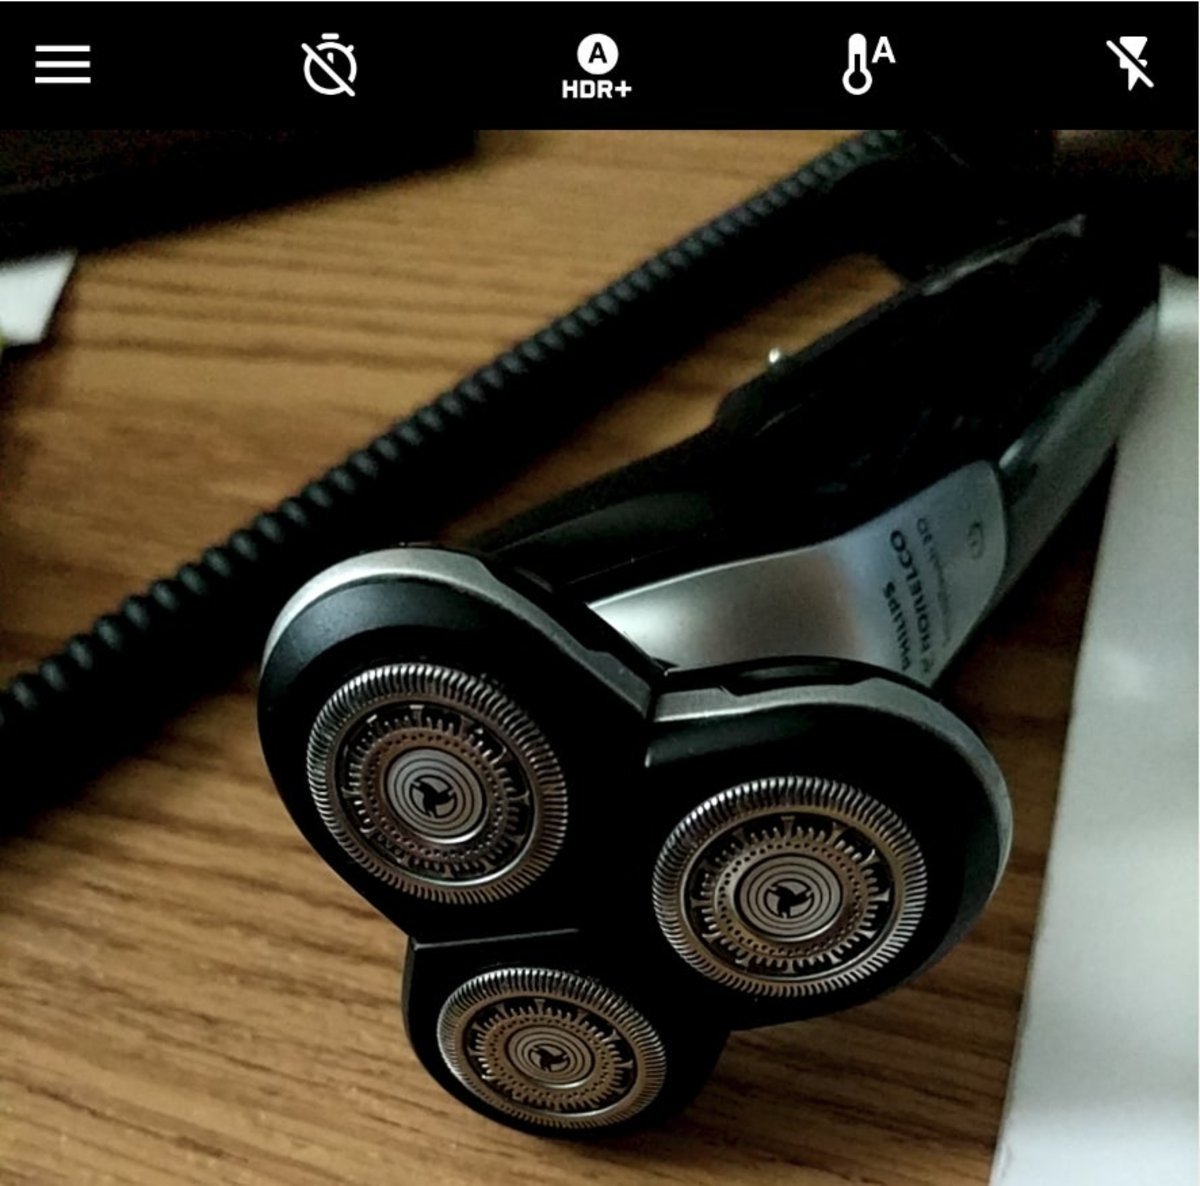 La app de cámara de Google se actualiza: aviso por lente sucia, nuevos gestos y más